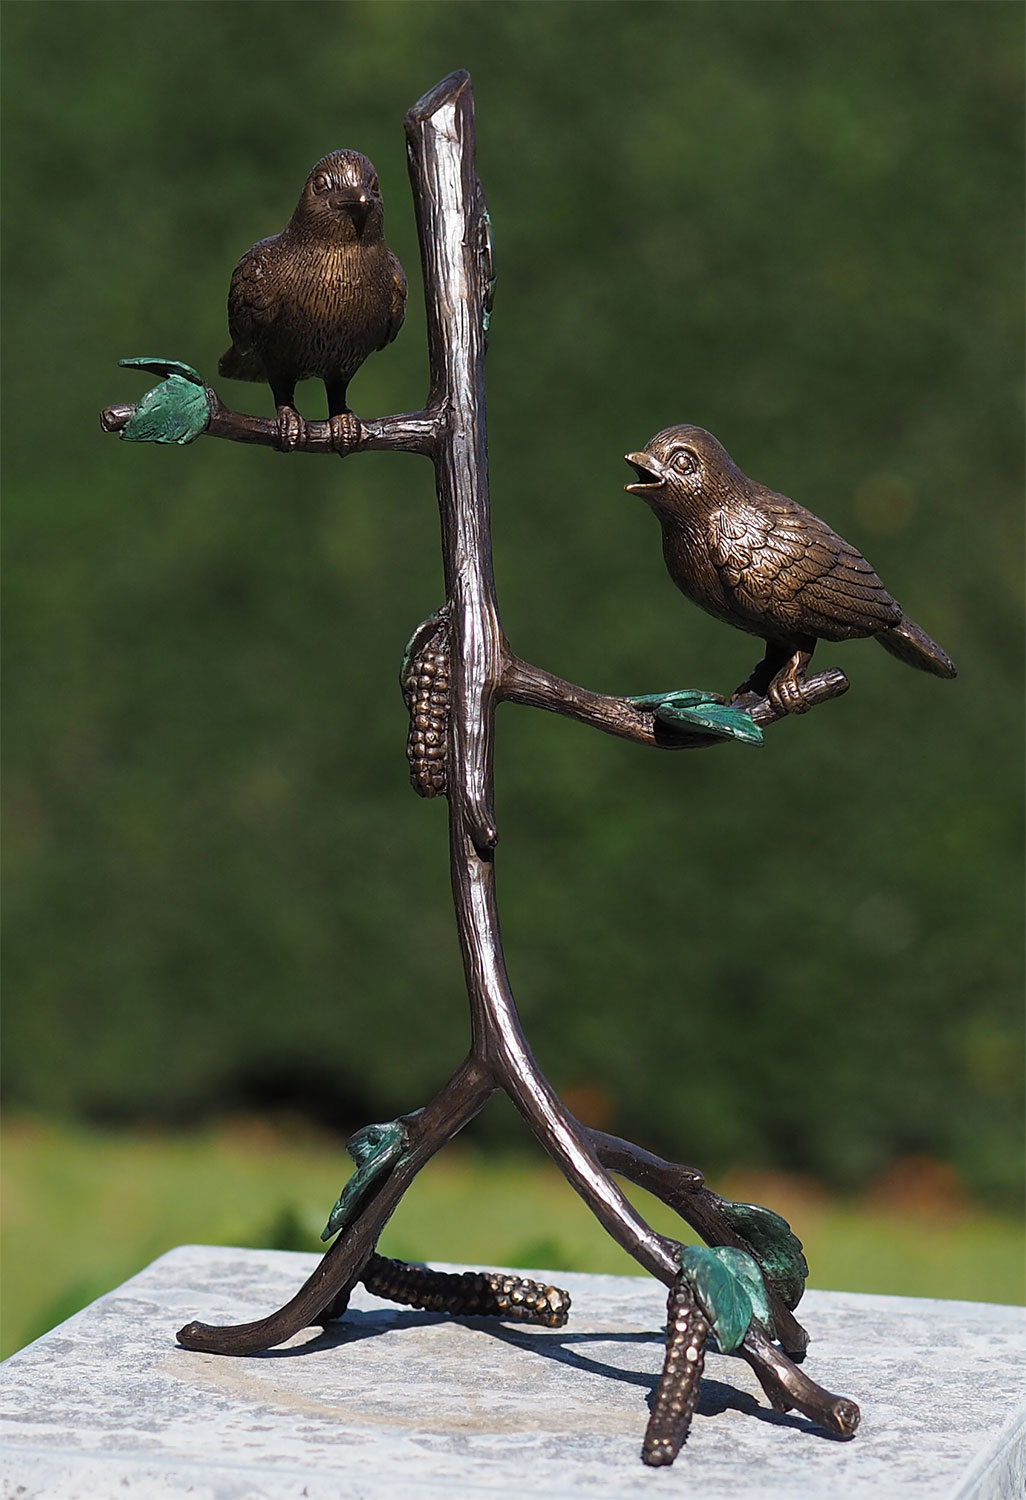 Garden sculpture "Birds on Branch", bronze